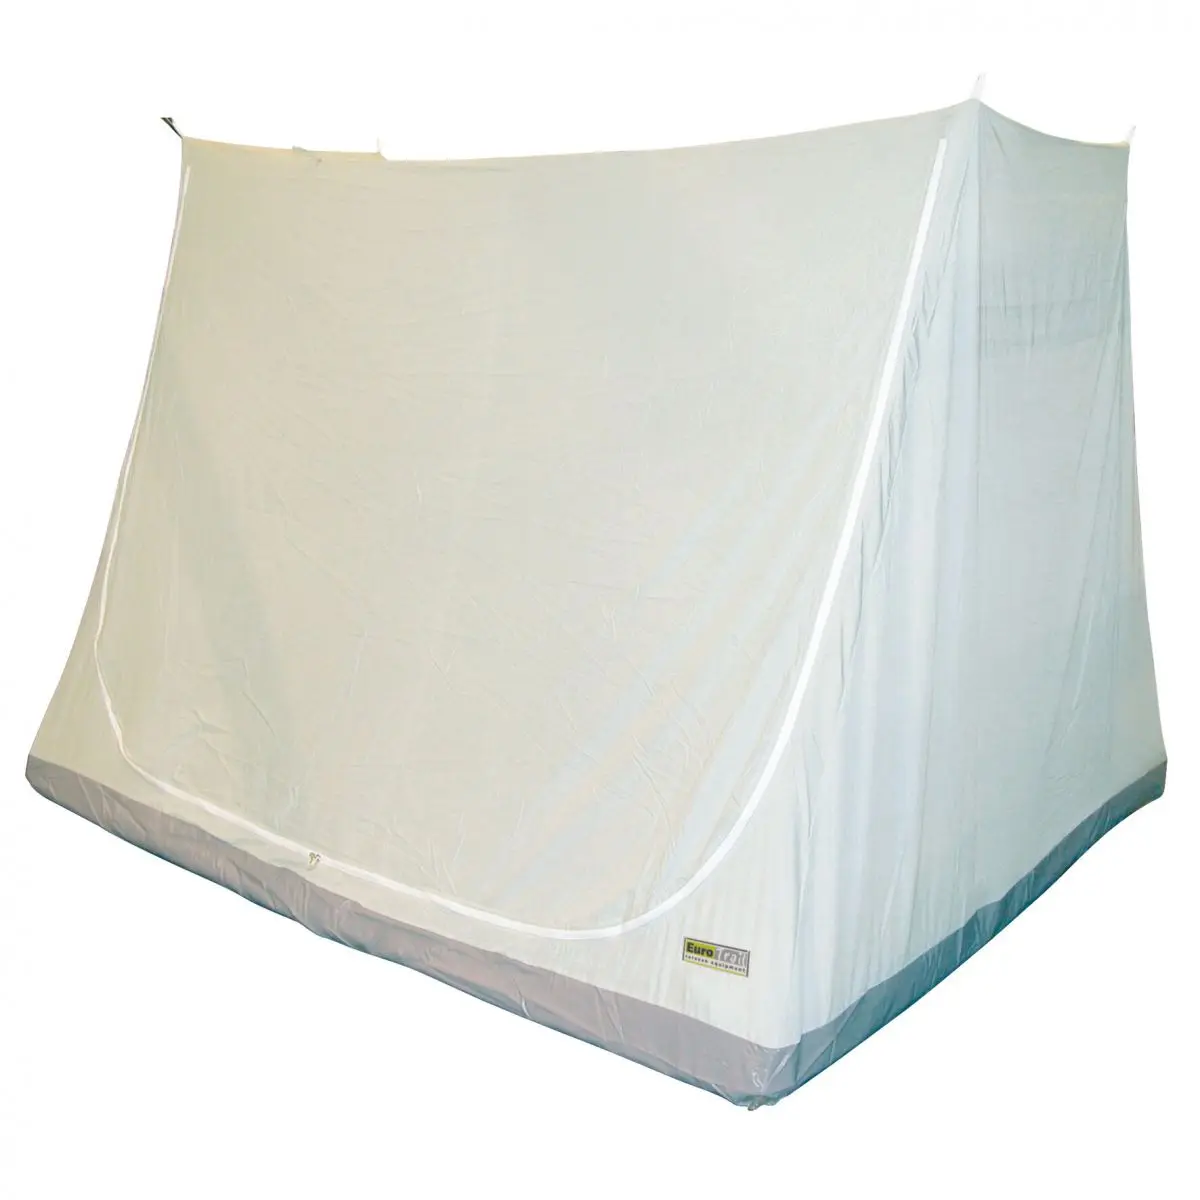 Cabina de dormit de lux - 200 x 145 x 135 cm